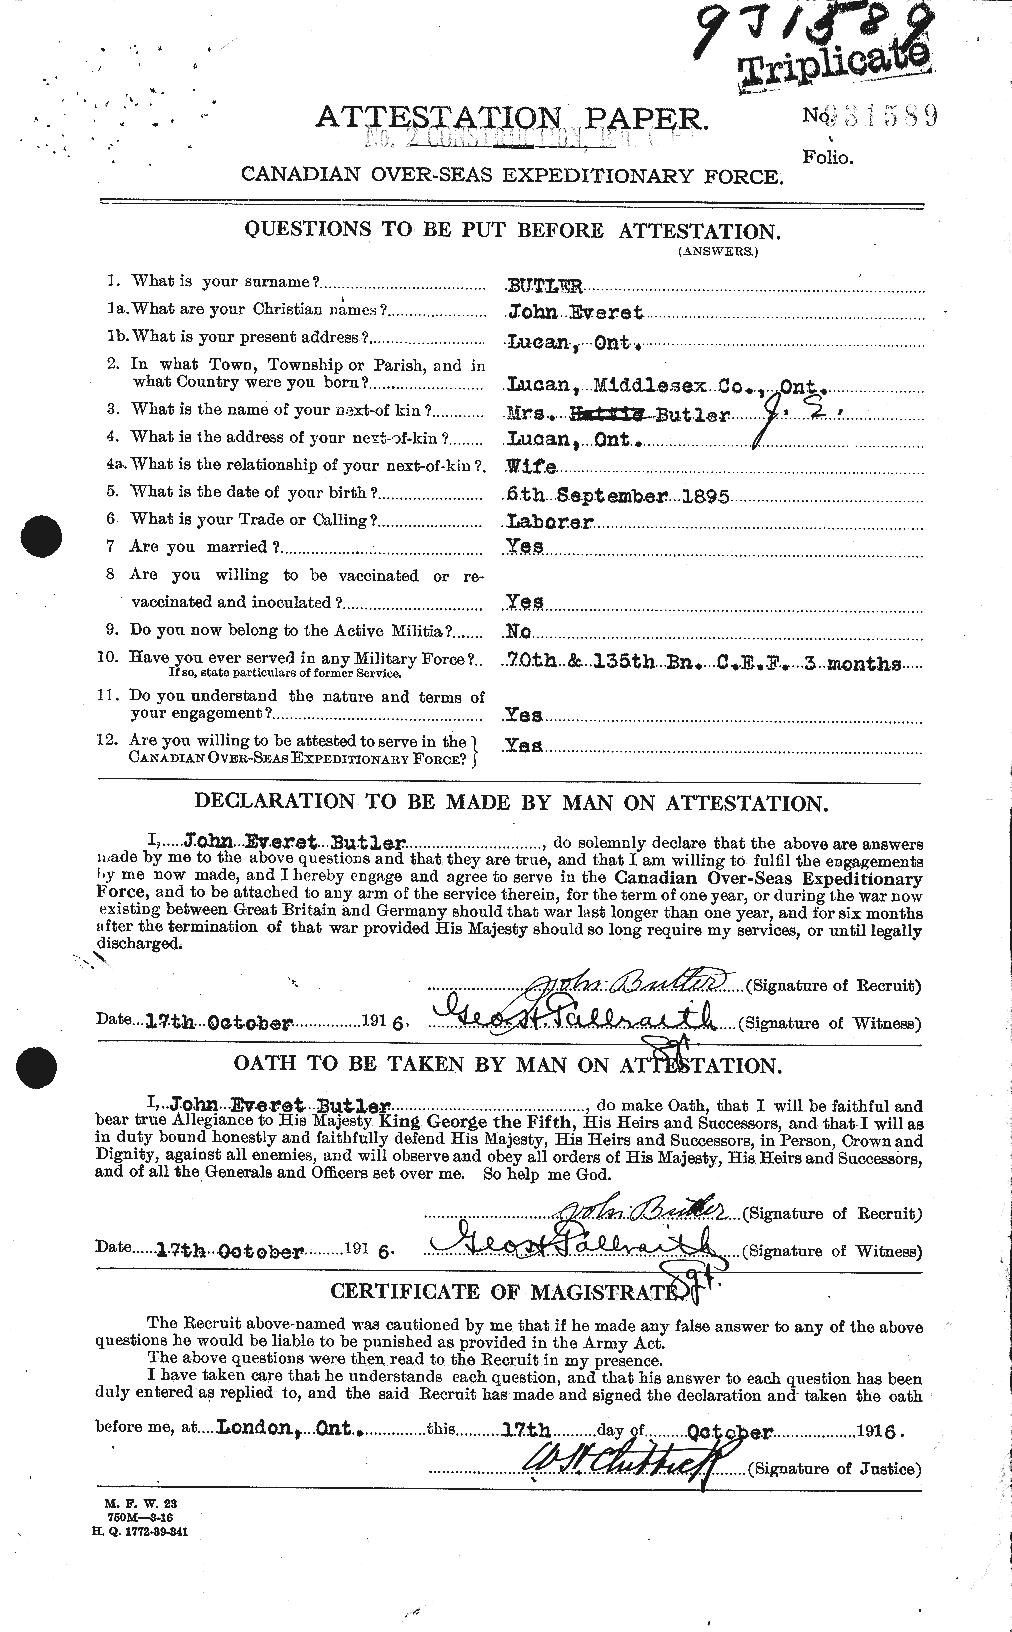 Dossiers du Personnel de la Première Guerre mondiale - CEC 276043a